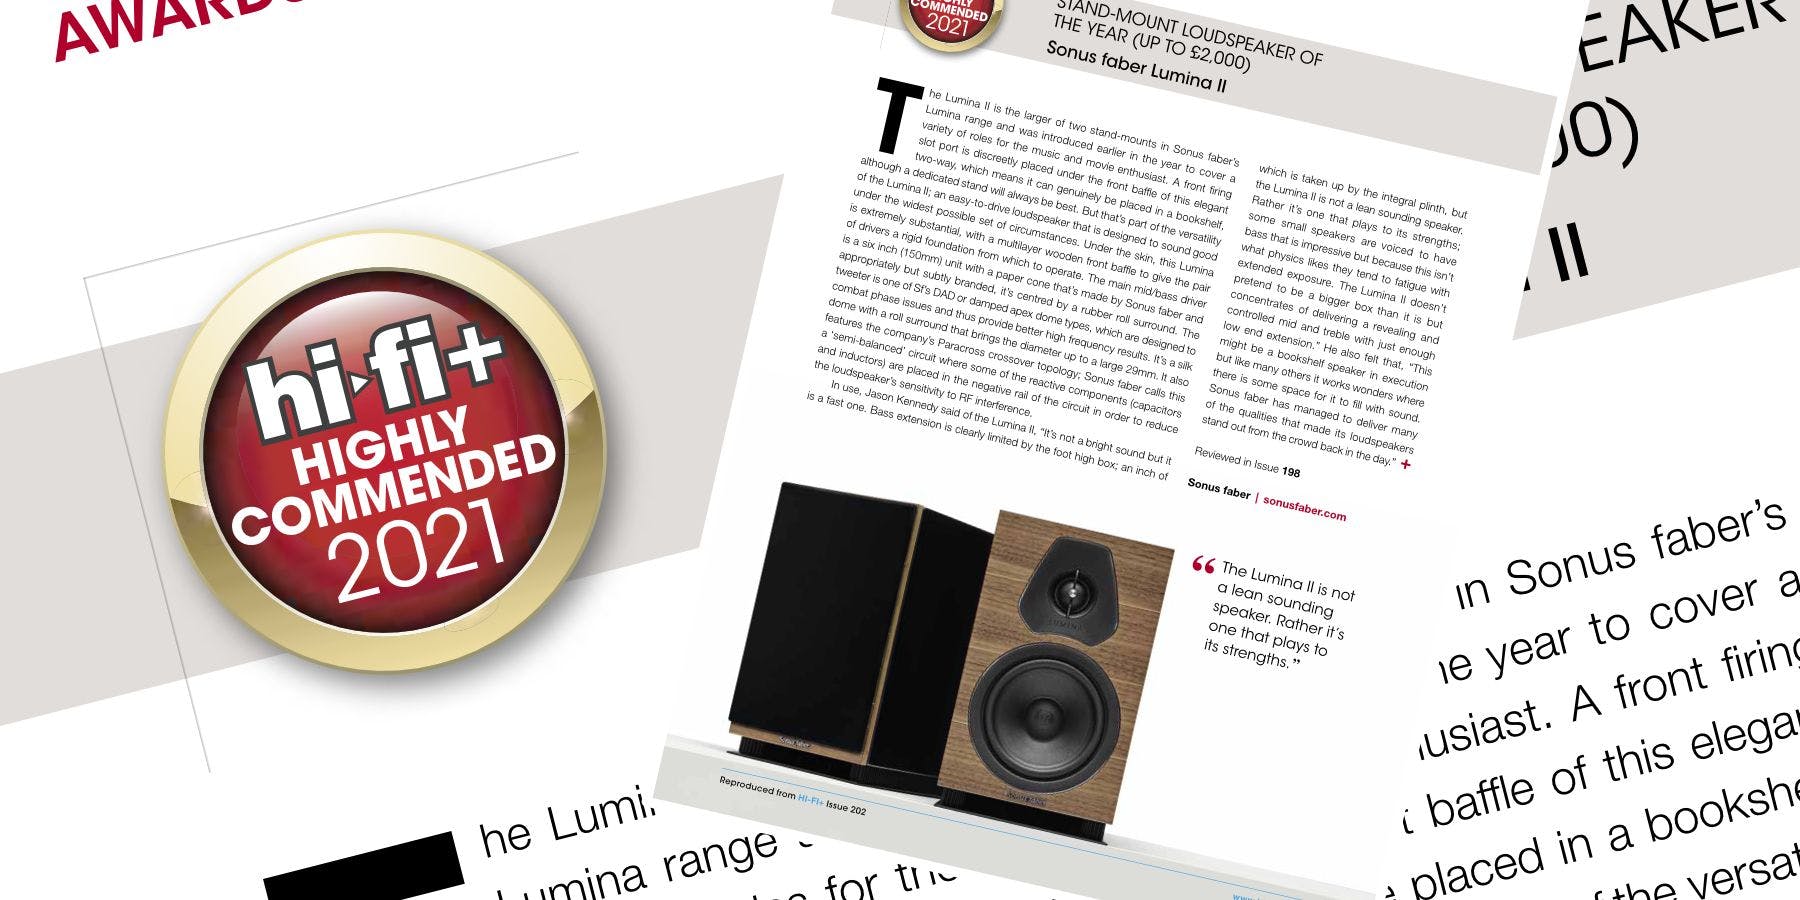 Sonus faber Lumina II, awarded 'Highly Commended 2021' by Hi-Fi Plus Magazine